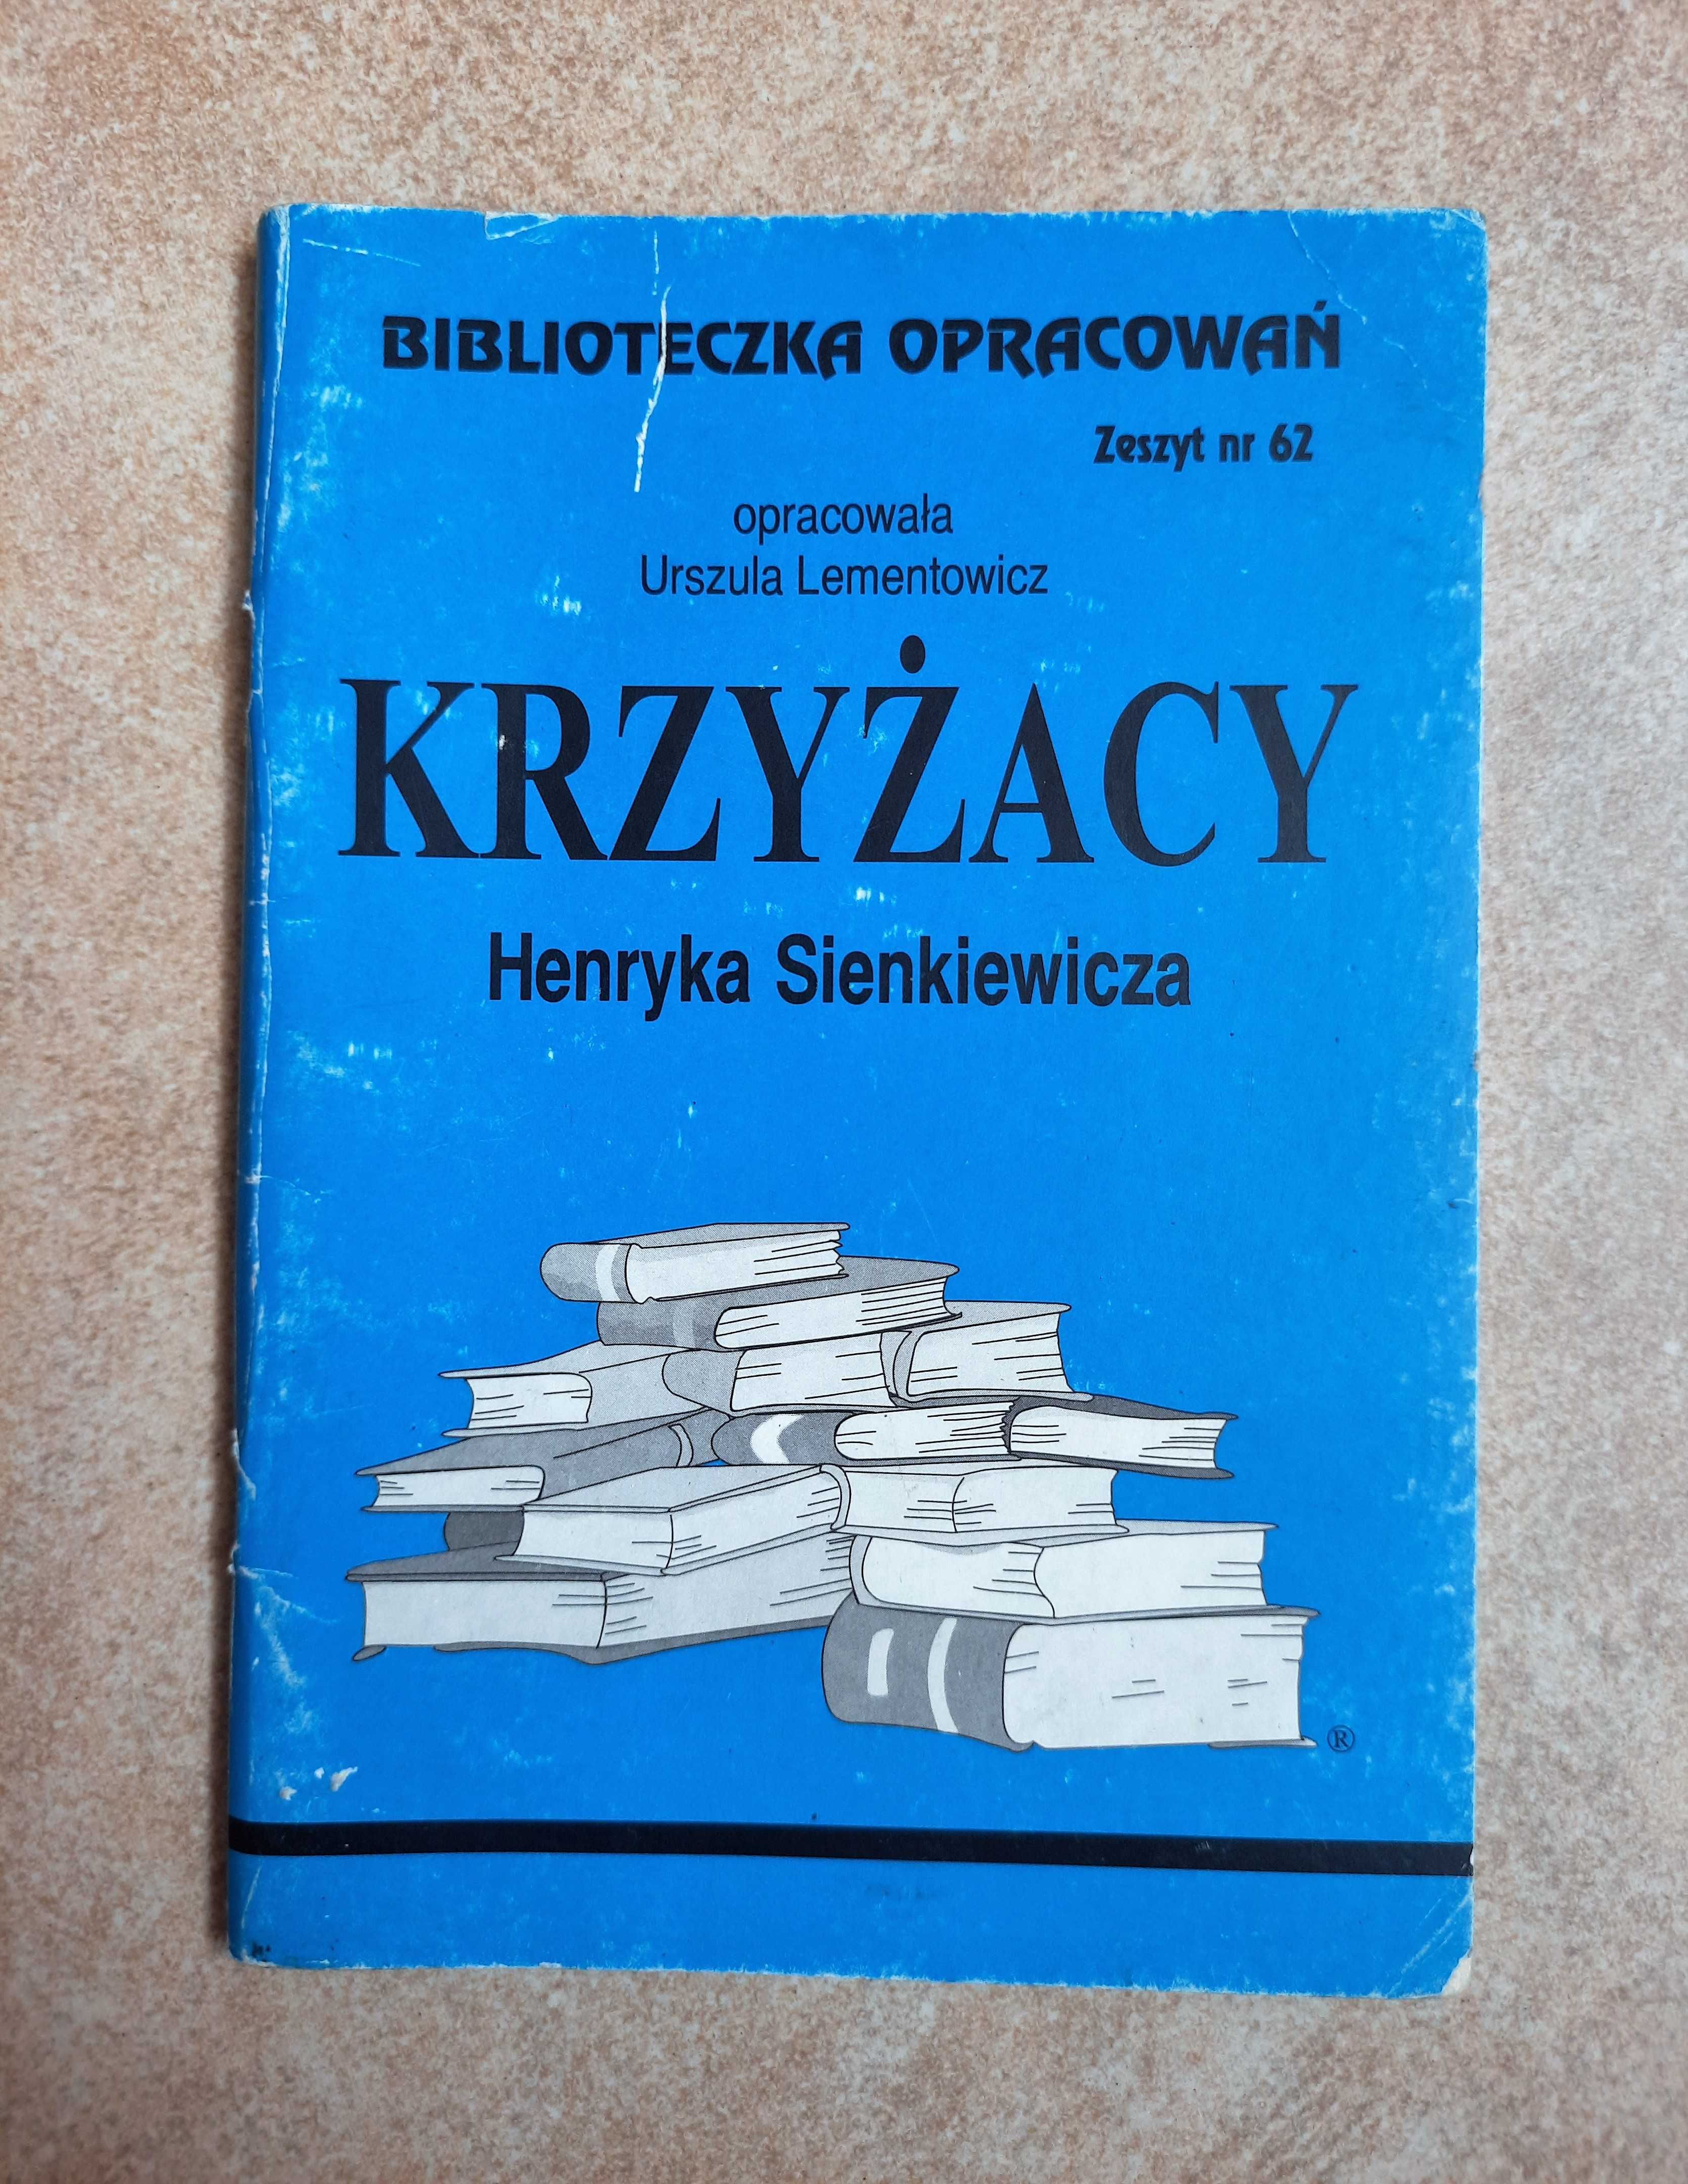 Biblioteczka opracowań zeszyt nr 62 Krzyżacy Sienkiewicza